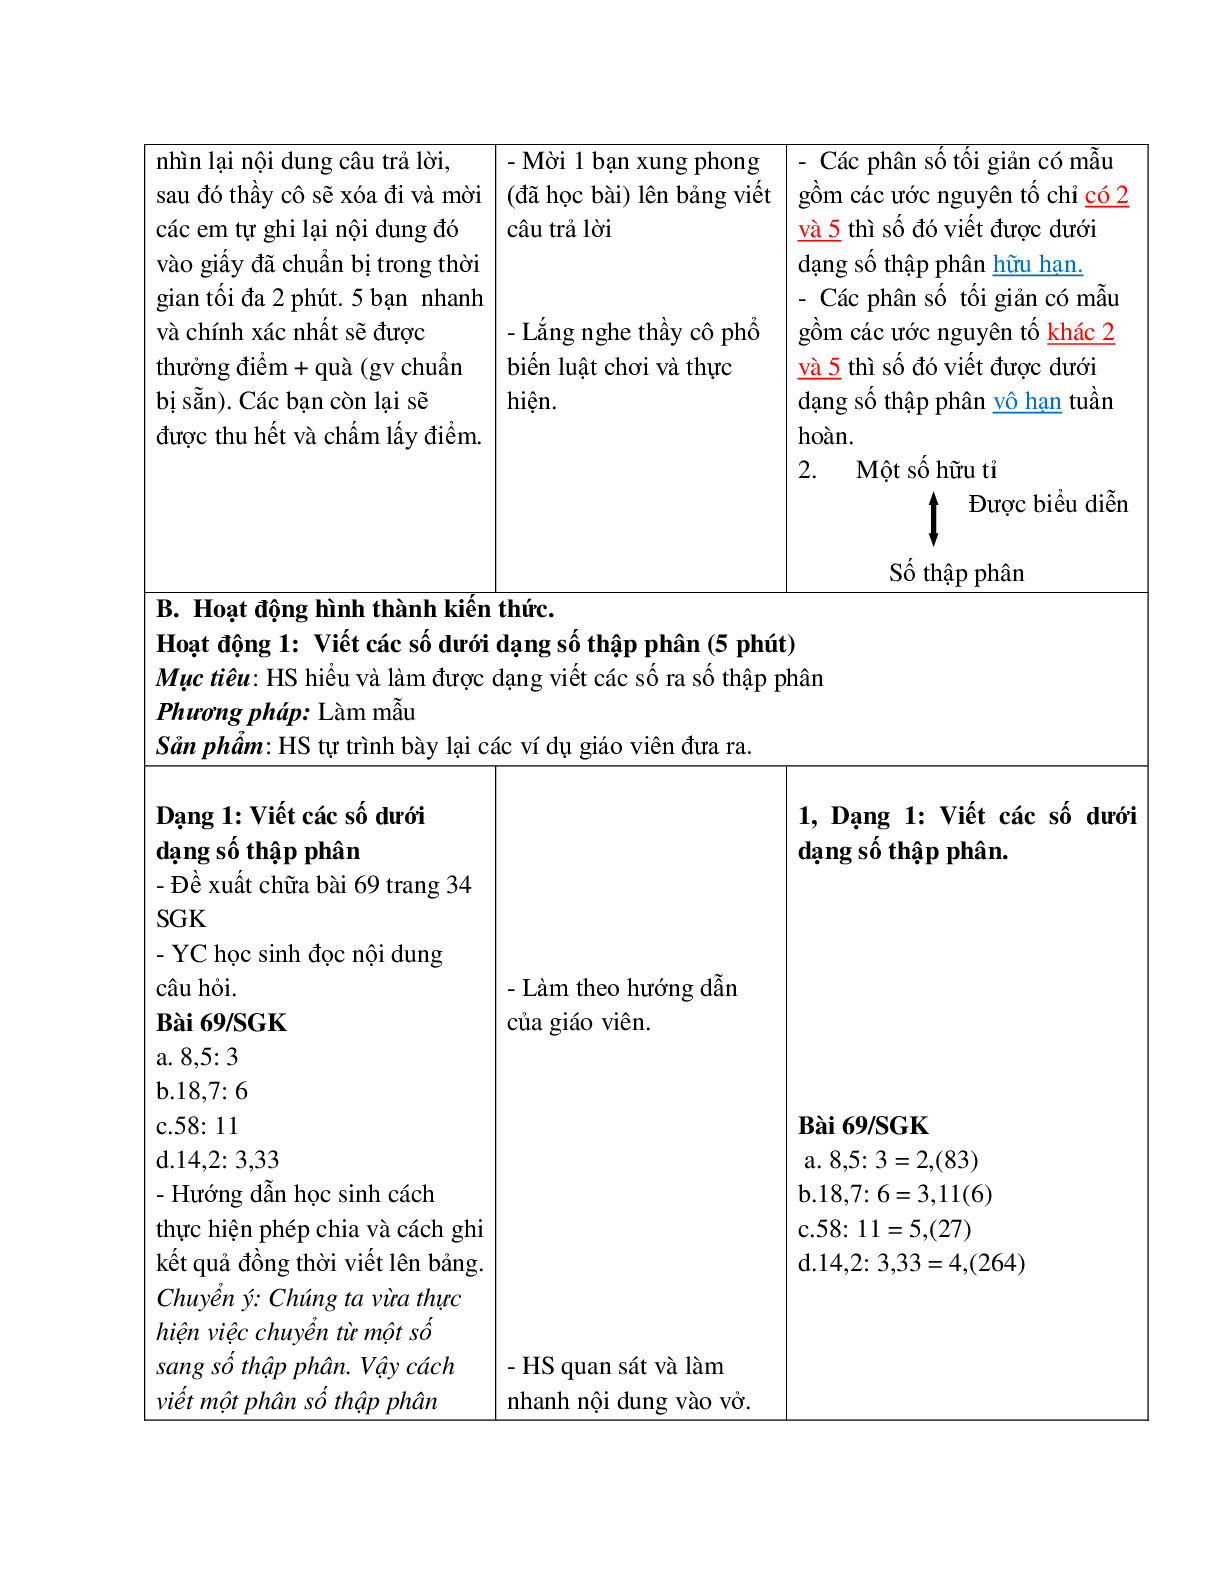 Giáo án Toán học 7 bài 9: Số thập phân hữu hạn. Số thập phân vô hạn tuần hoàn hay nhất (trang 6)